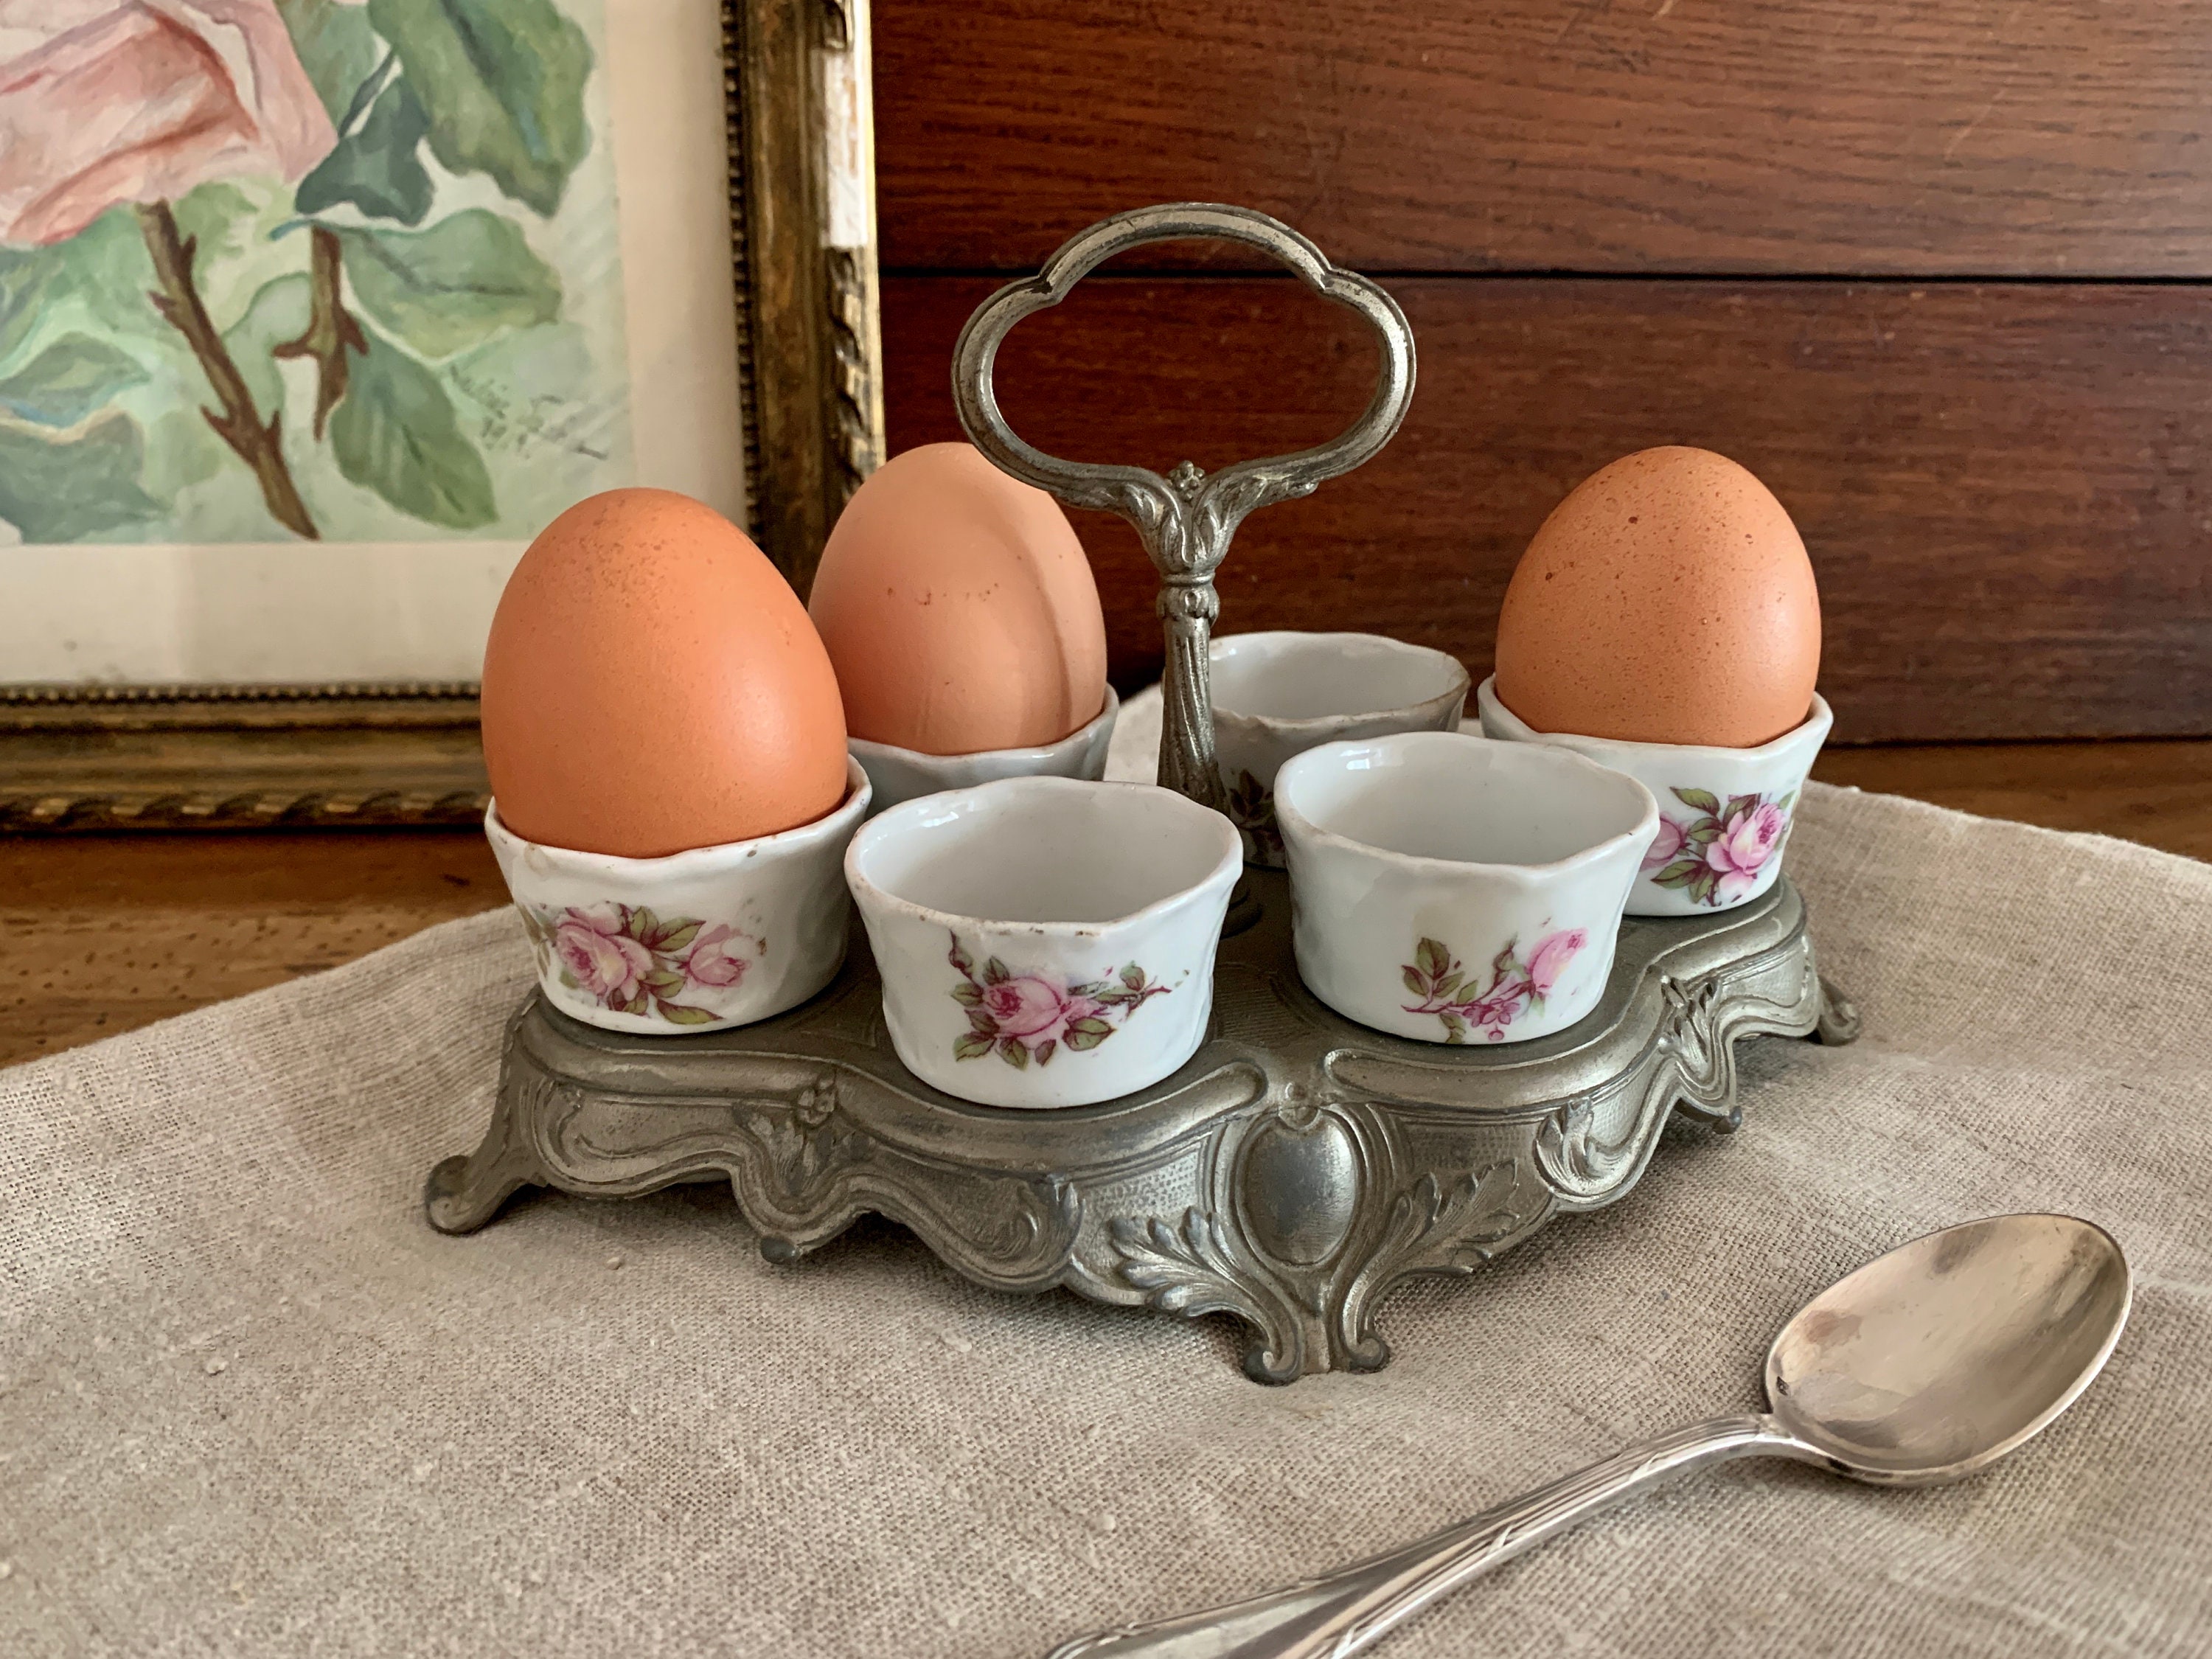 Français Porte-Gobelet d'oeufs en Porcelaine Antique Art Nouveau Breakfast Set